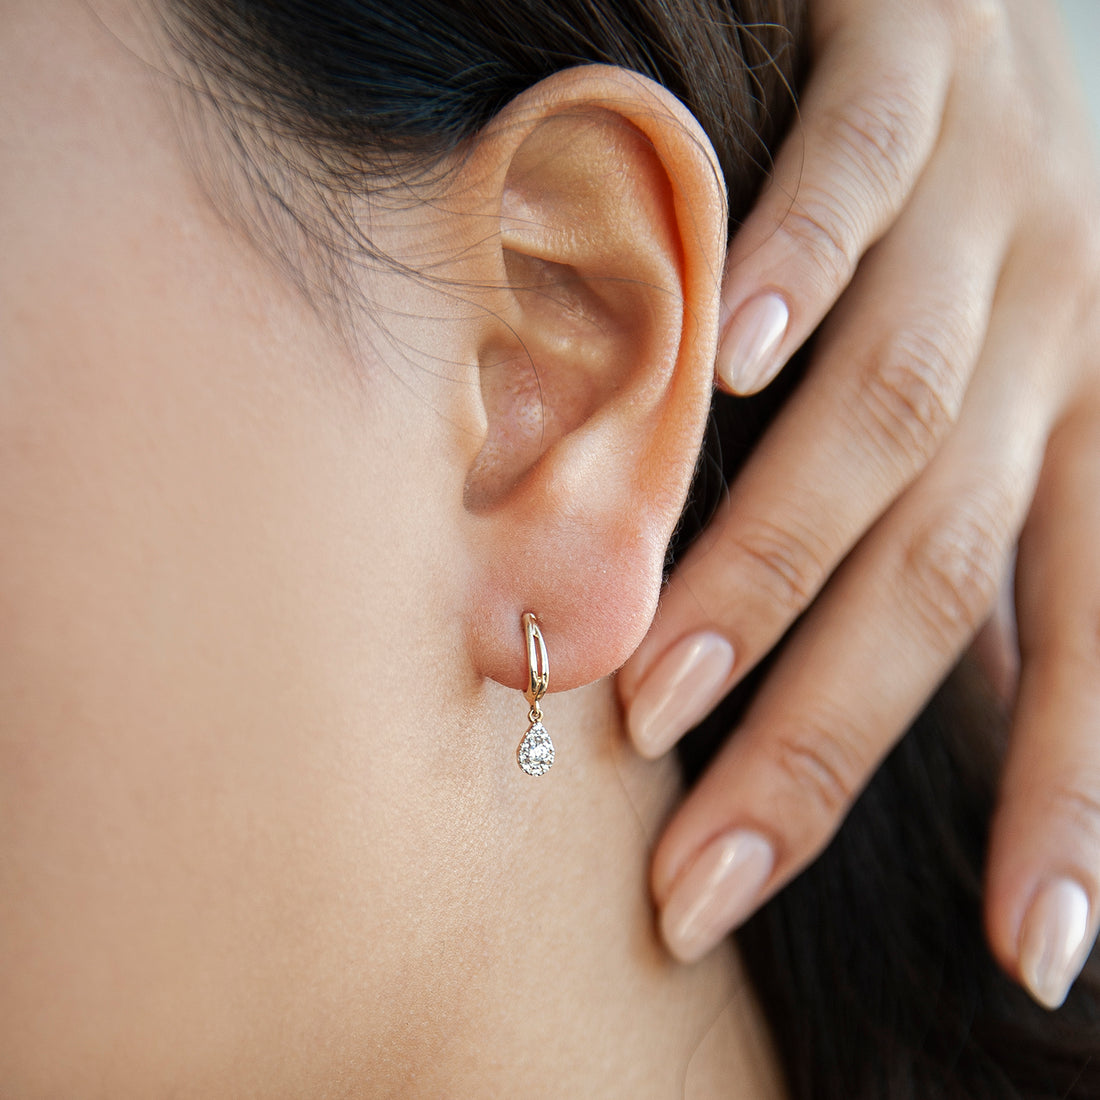 Trendy Dangle Earrings: A Customer Favorite